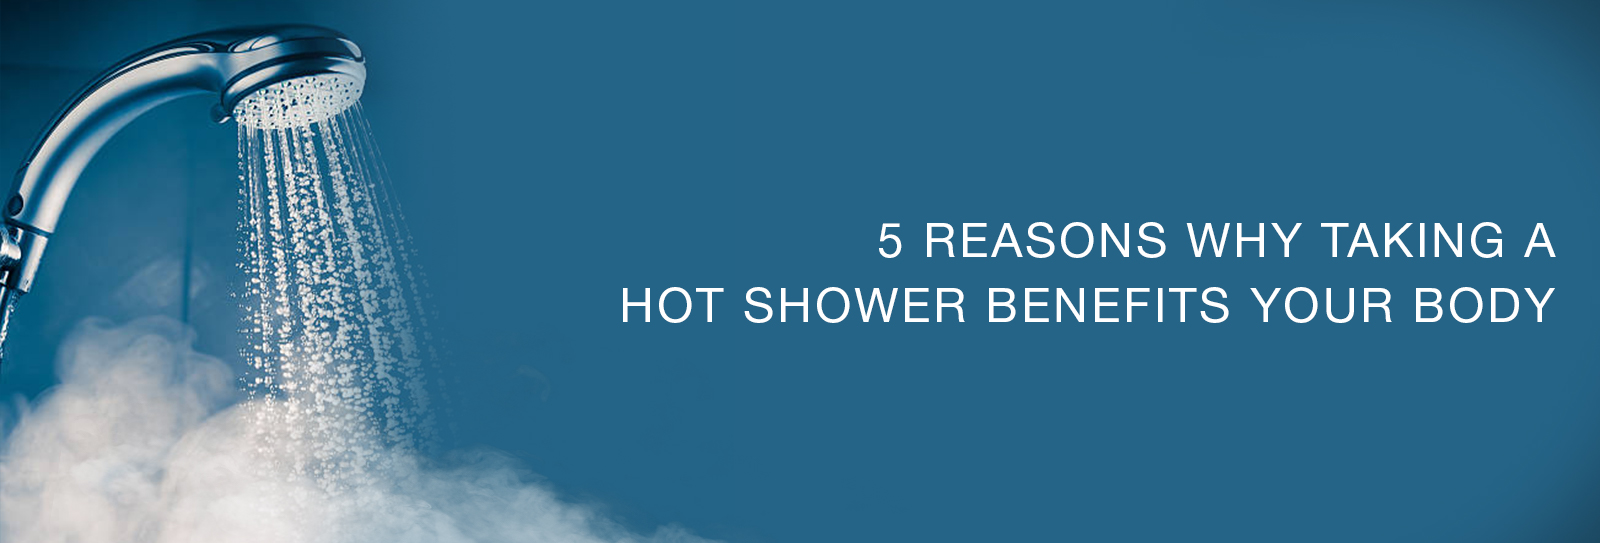 5 Hot Shower Benefits For Your Body Jaquar Bath Jaquar